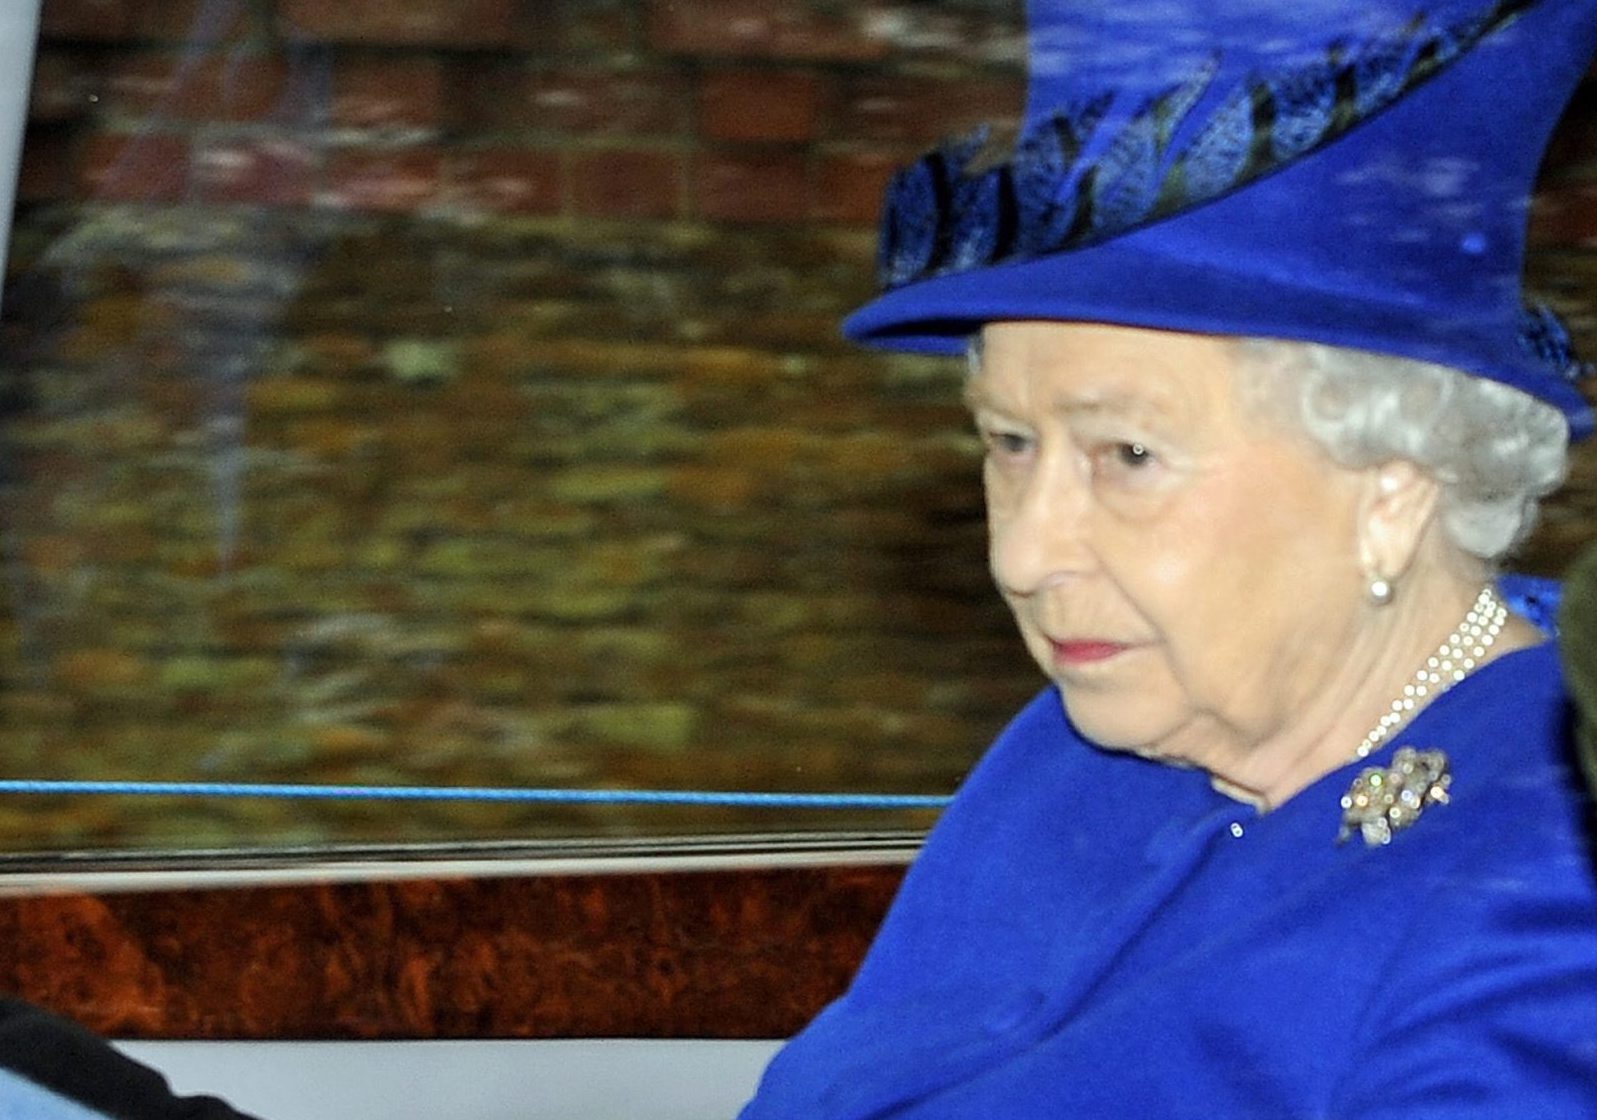 Πρώτη δημόσια εμφάνιση της Βασίλισσας Ελισάβετ μετά το βαρύ κρυολόγημά της